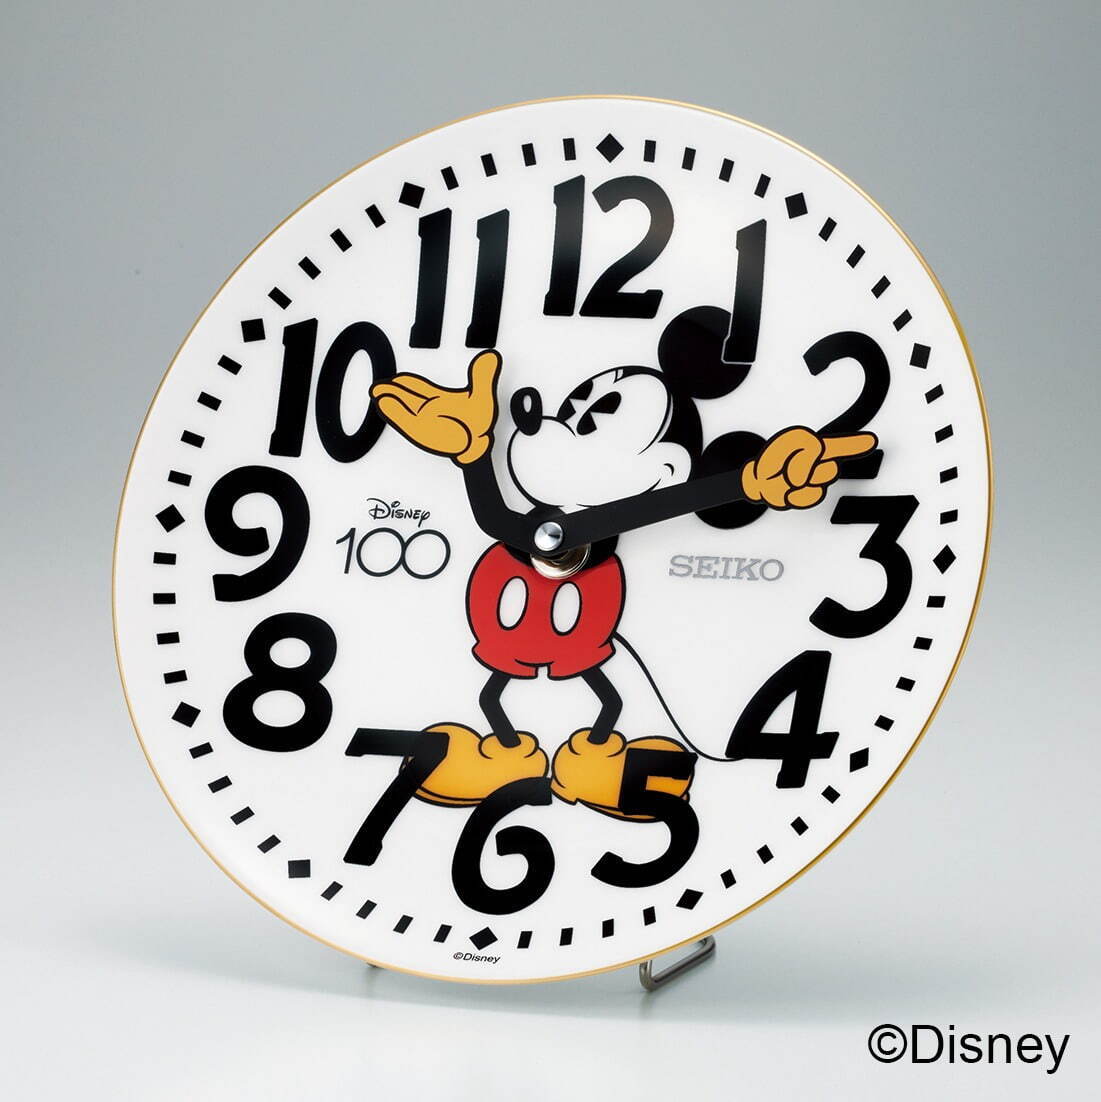 セイコー「ディズニー創立100周年」限定の絵皿時計、ミッキーマウスの